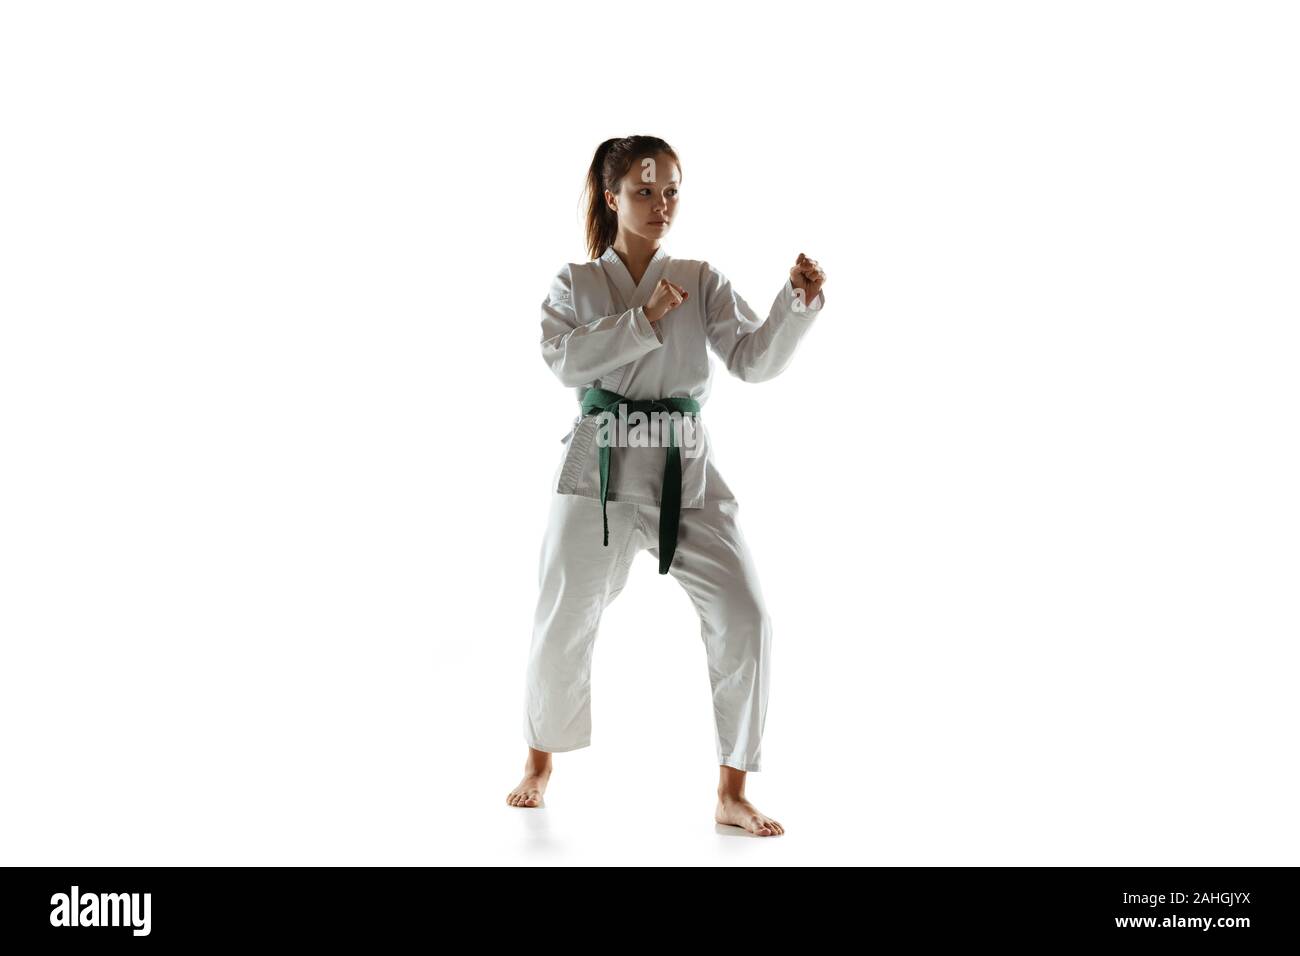 Zuversichtlich junior im Kimono üben Hand-auf-Hand zu bekämpfen, Kampfsportarten Junge weibliche mongolischen Kämpfer mit Green Belt Training auf weißem Studiohintergrund. Konzept der gesunden Lebensstil, Sport, Action. Stockfoto